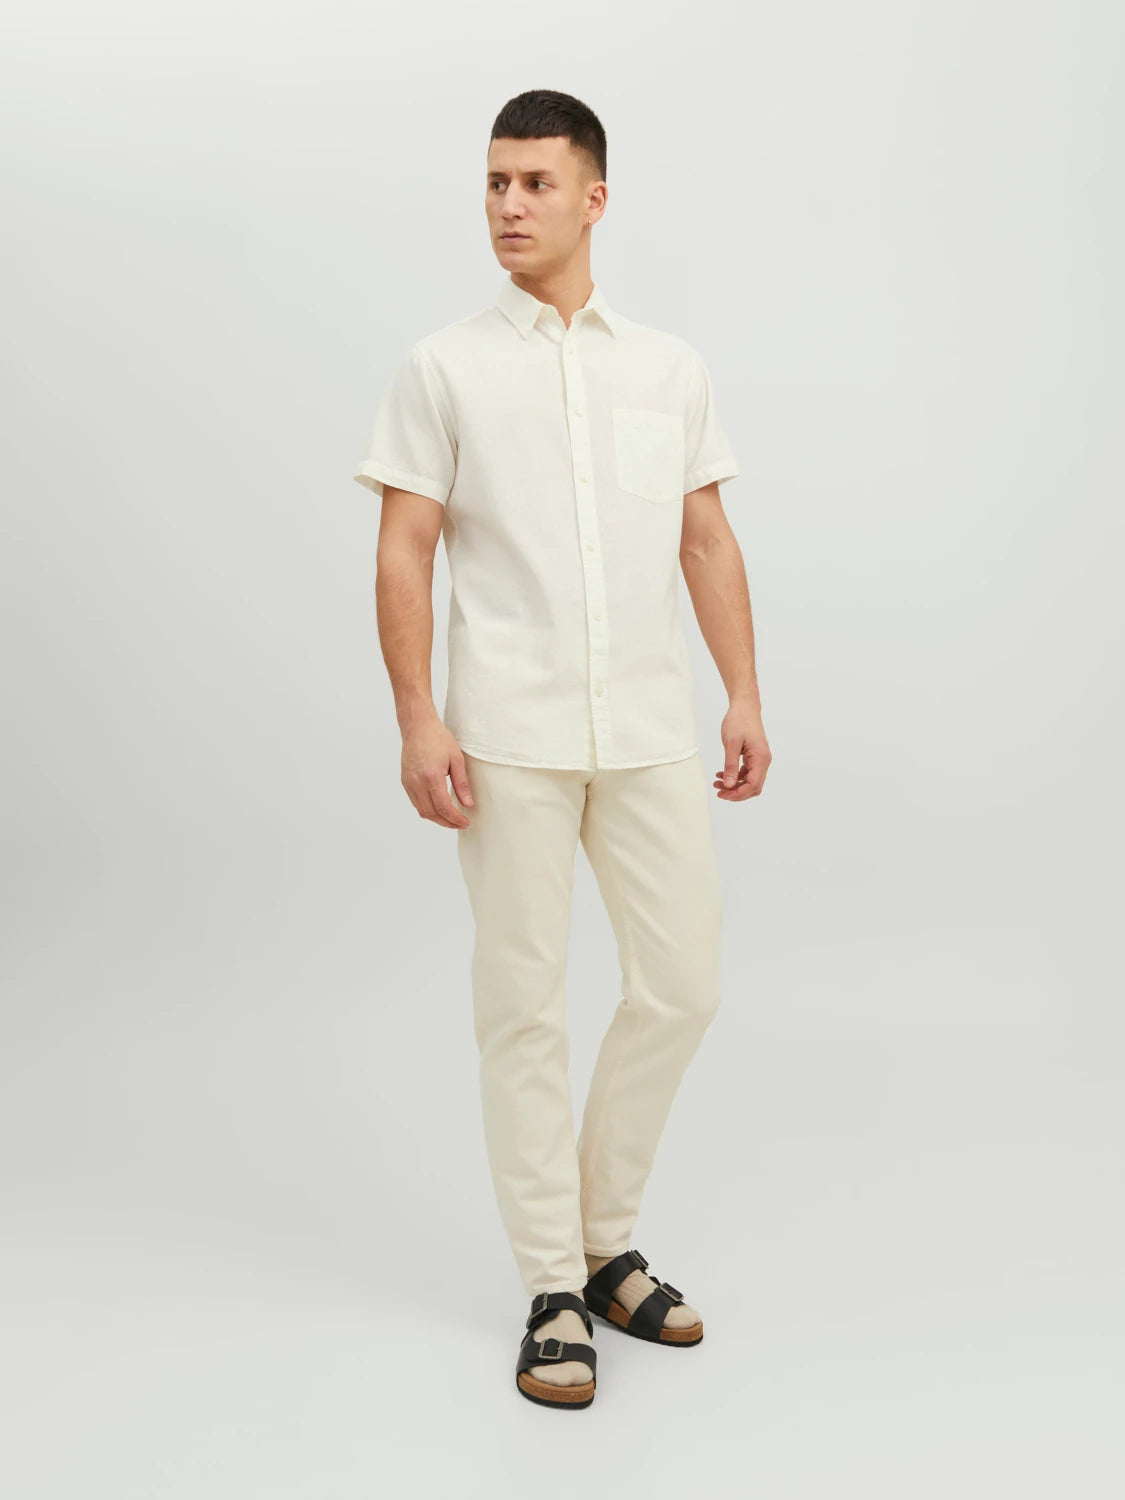 Linen Shirt Short Sleeves White